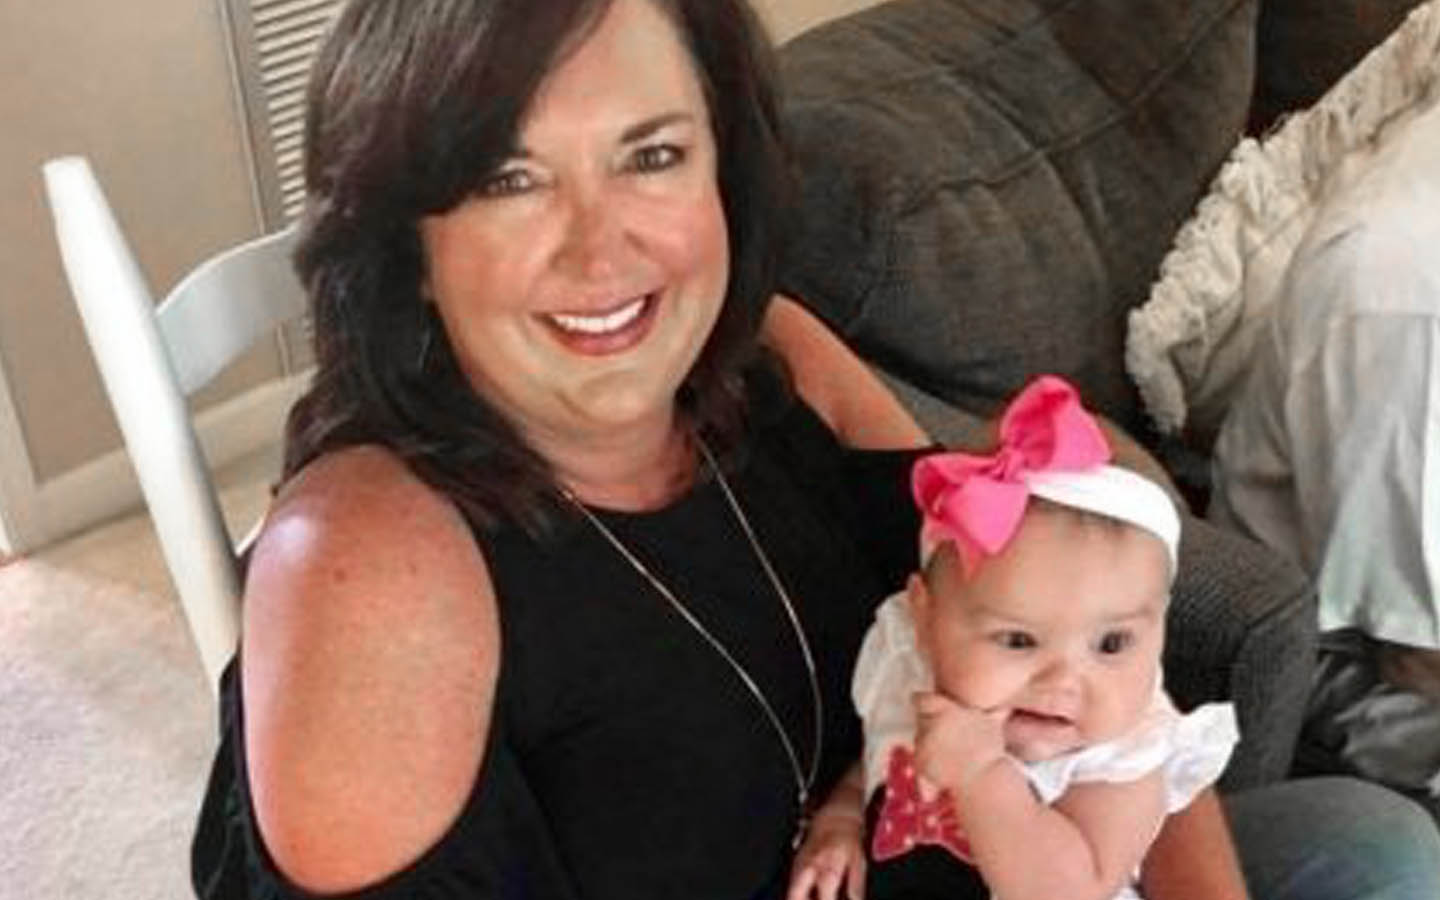 Angie, porteuse d’un implant, pose pour une photo avec un bébé